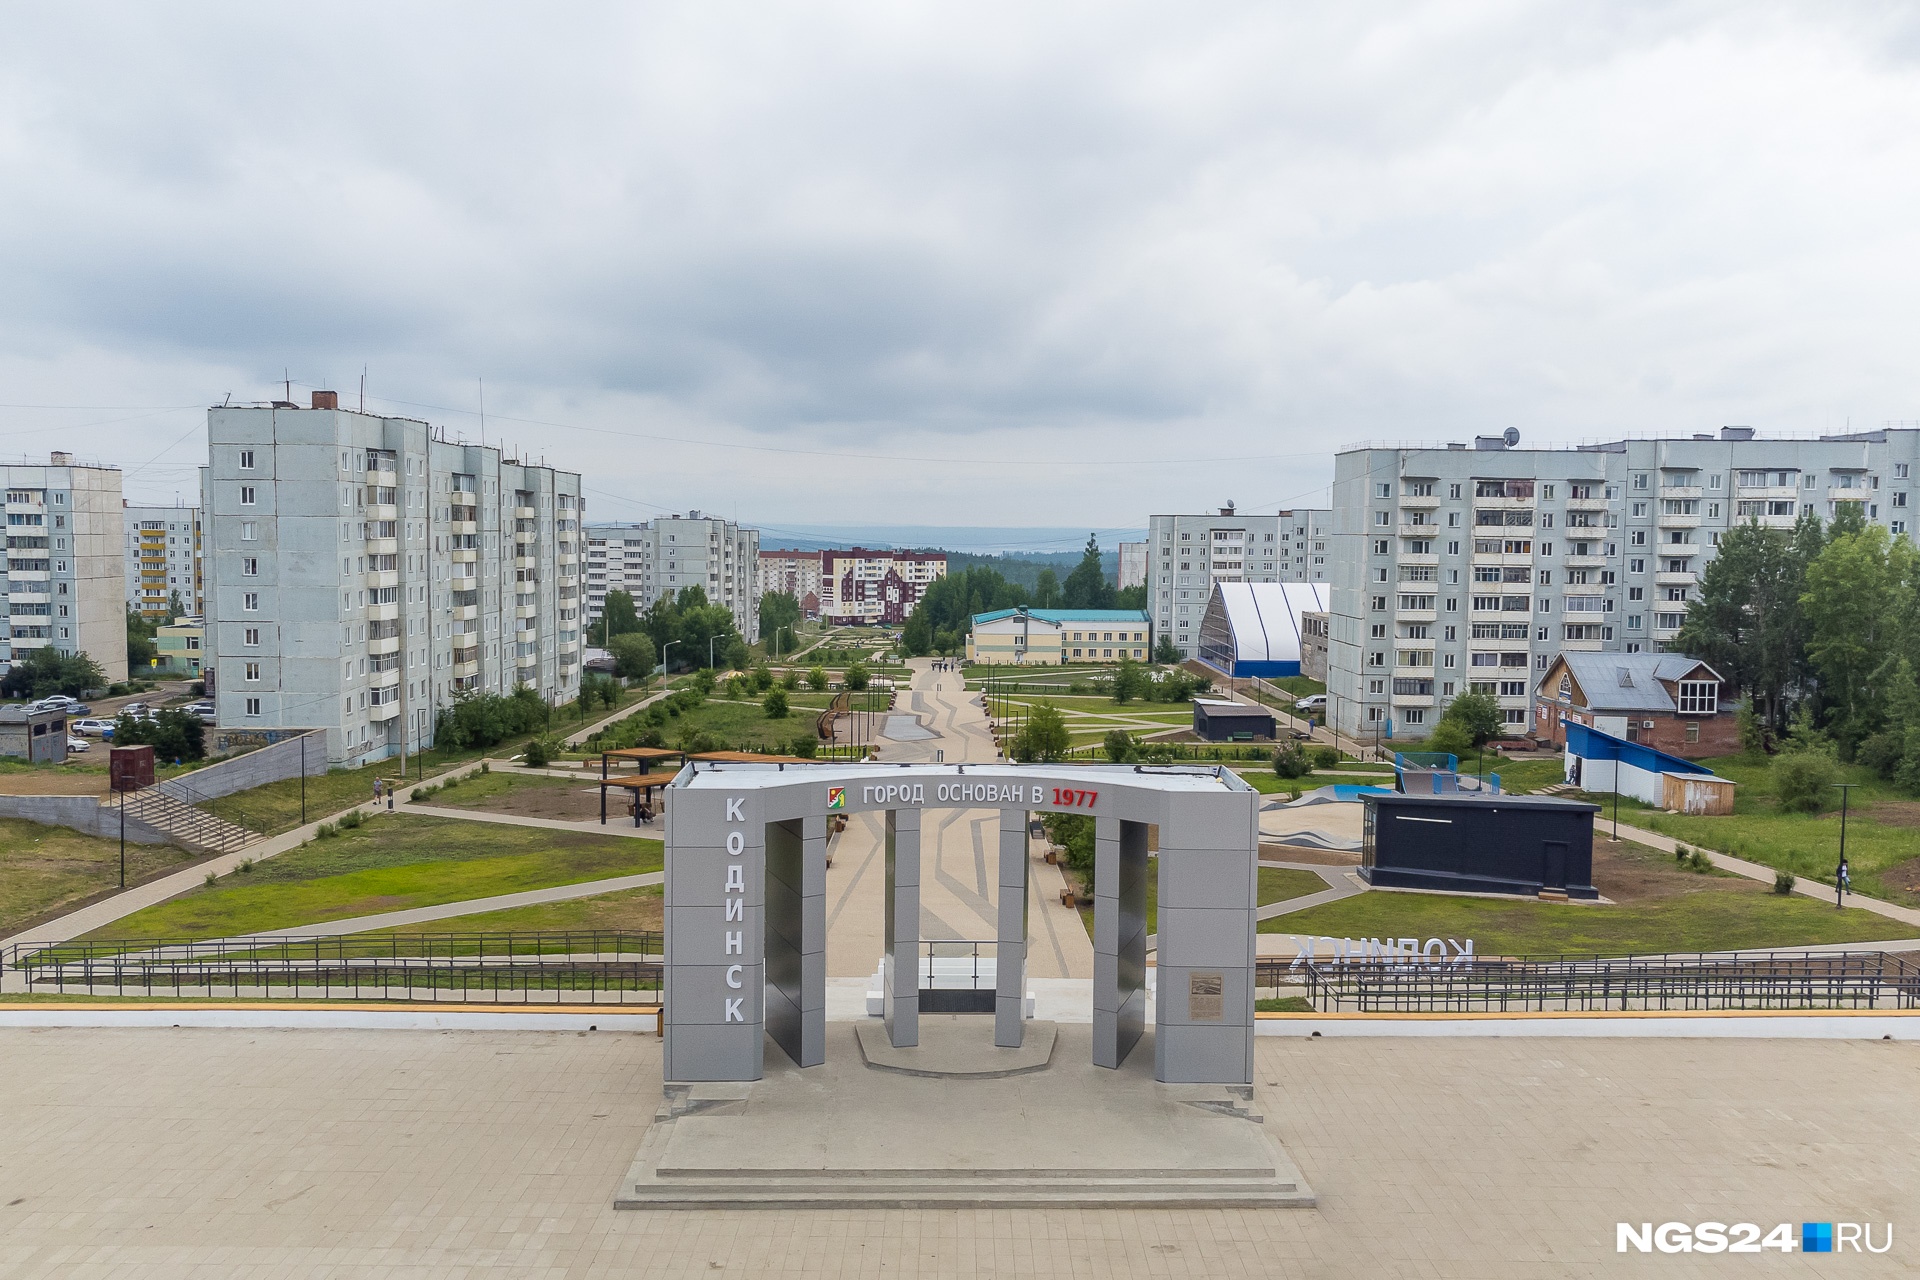 На главной площади города находится вот такая арка с датой образования Кодинска. Городом он стал в 1989 году